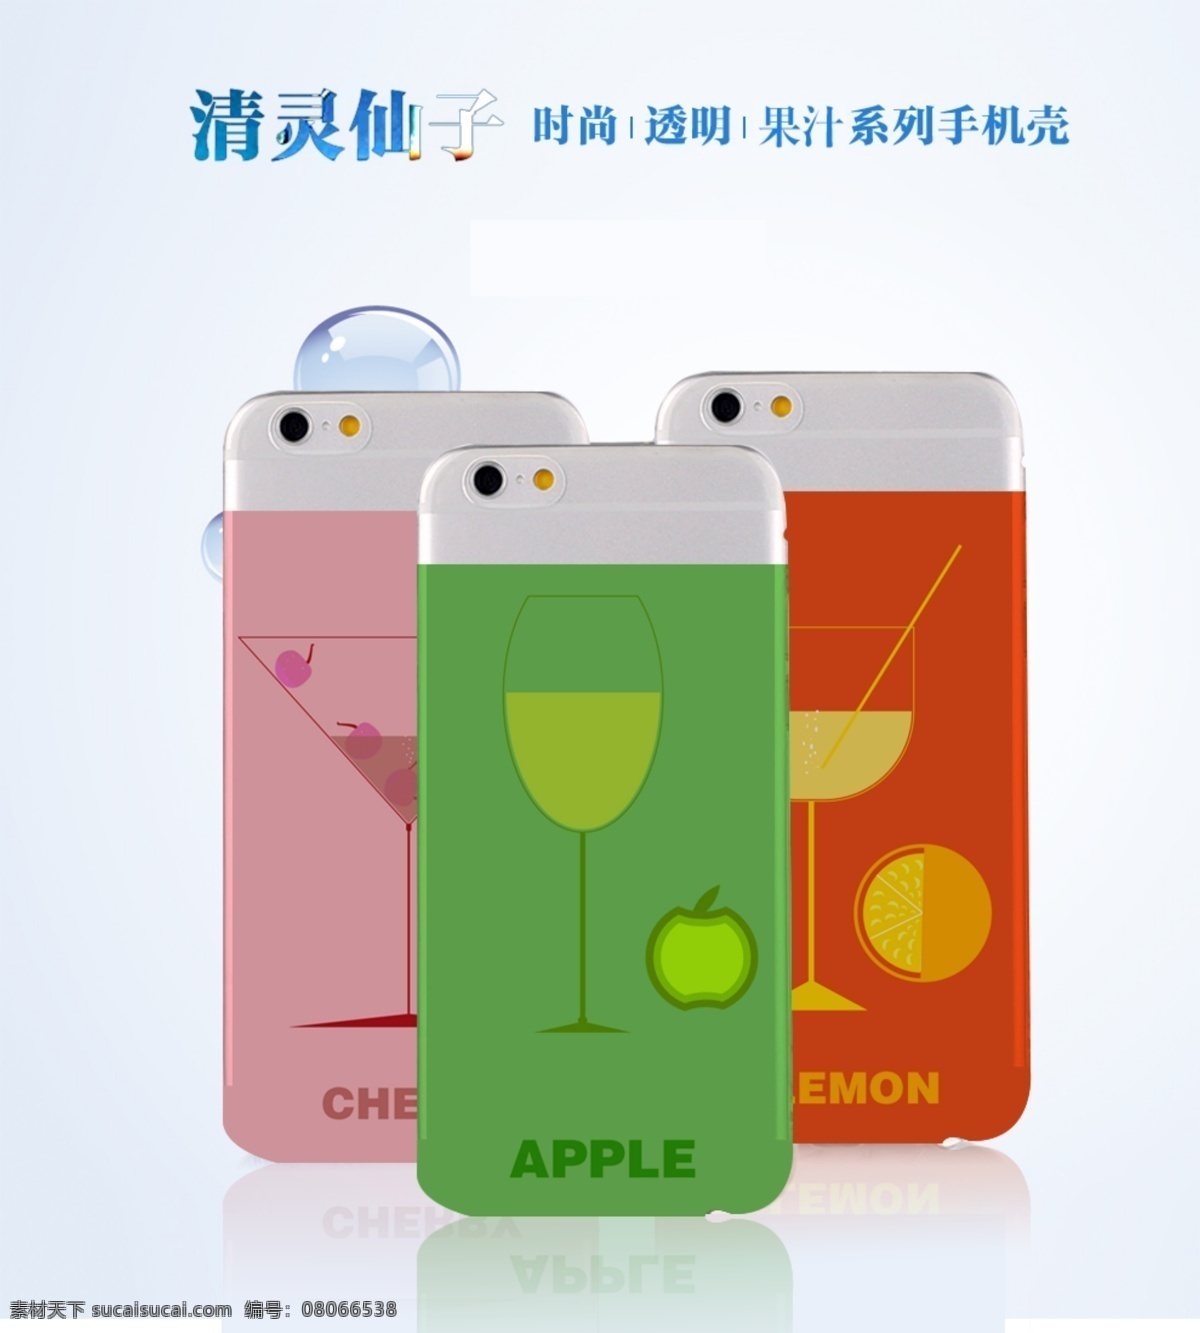 果汁 樱桃 苹果 柠檬 水果 画册 插画 广告 手机 手机壳 效果图 白色